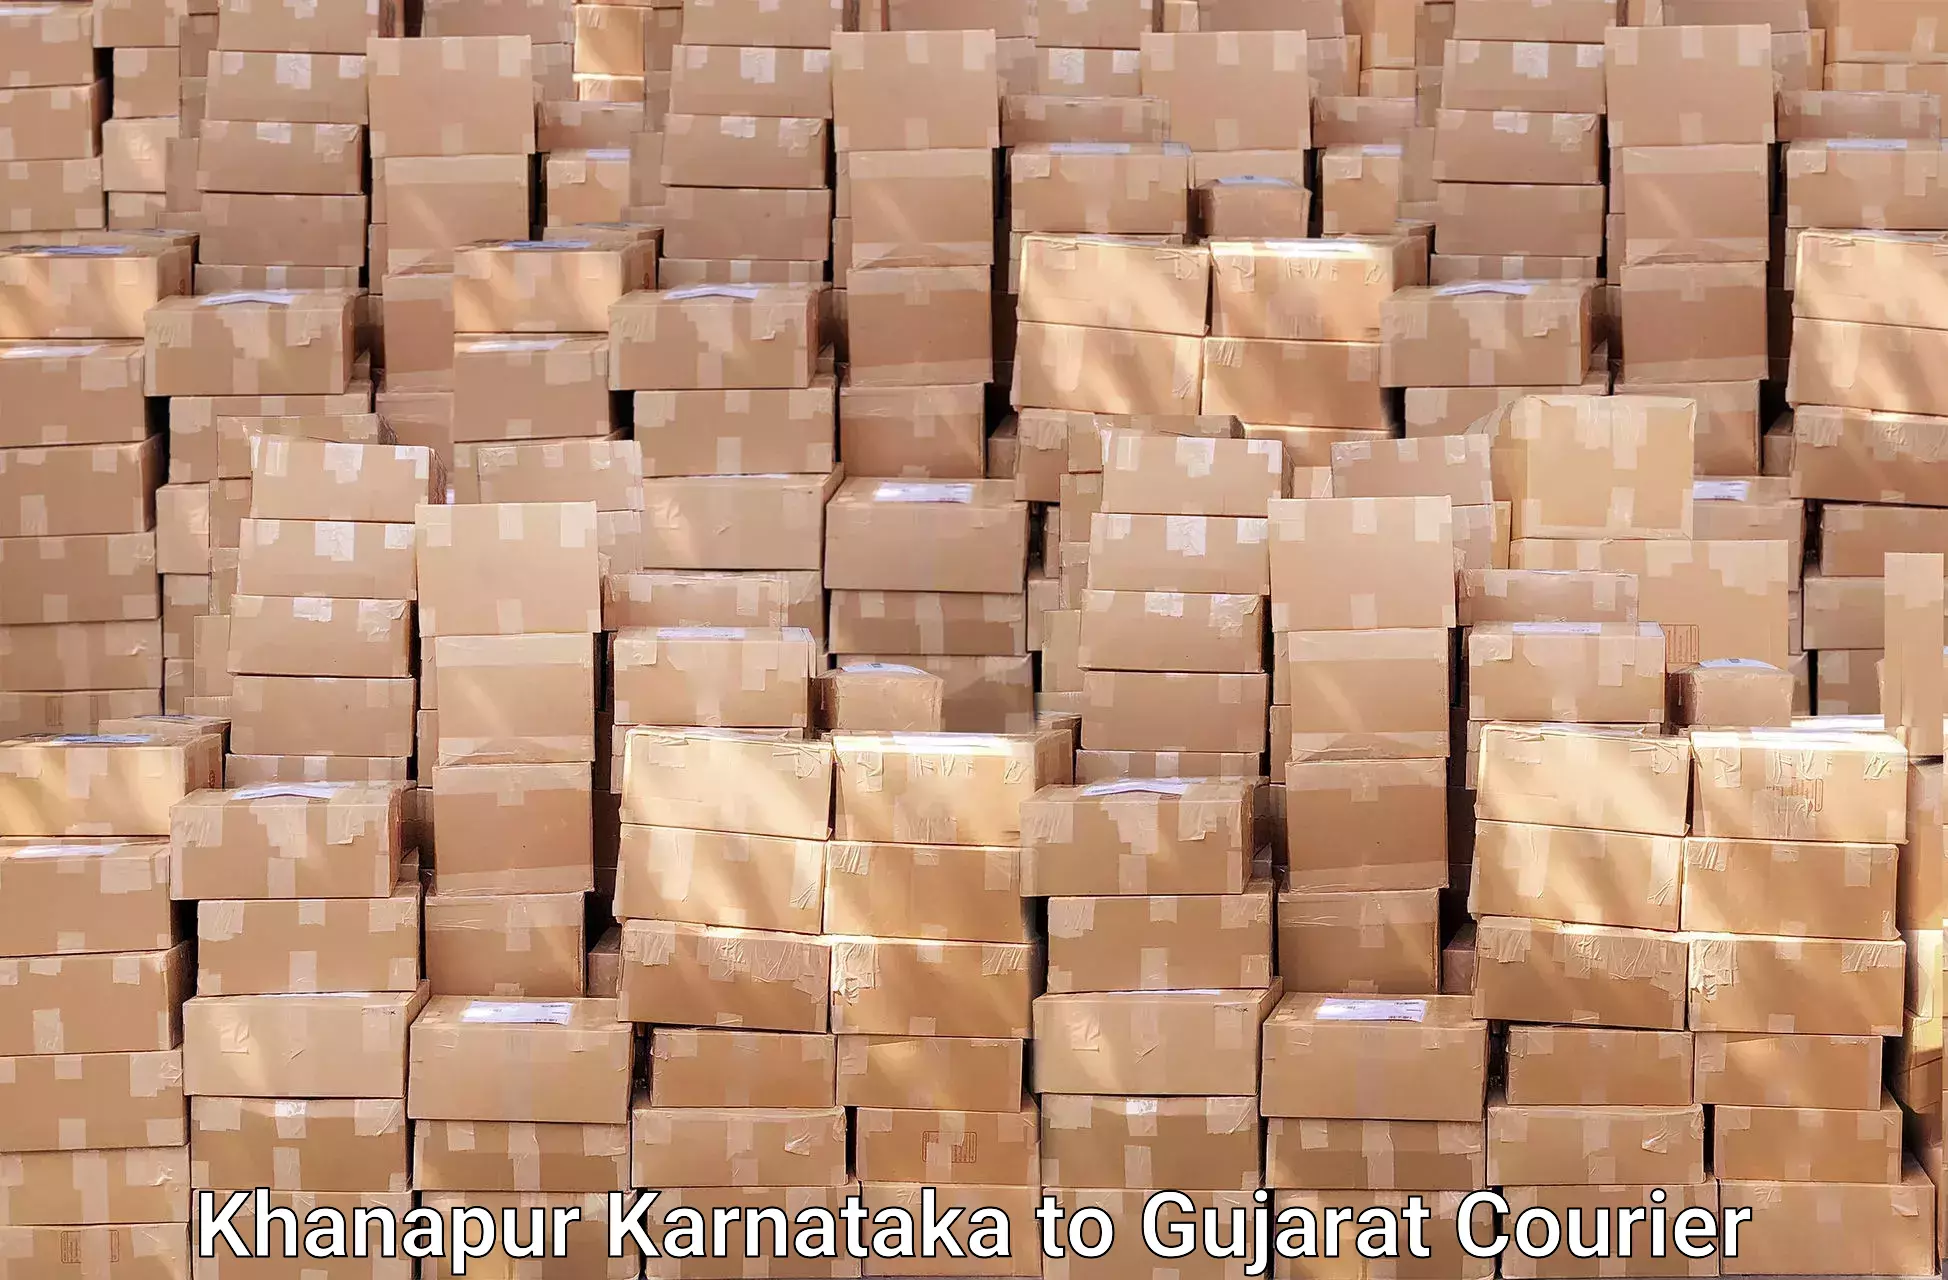 Efficient moving company Khanapur Karnataka to Dharampur Valsad